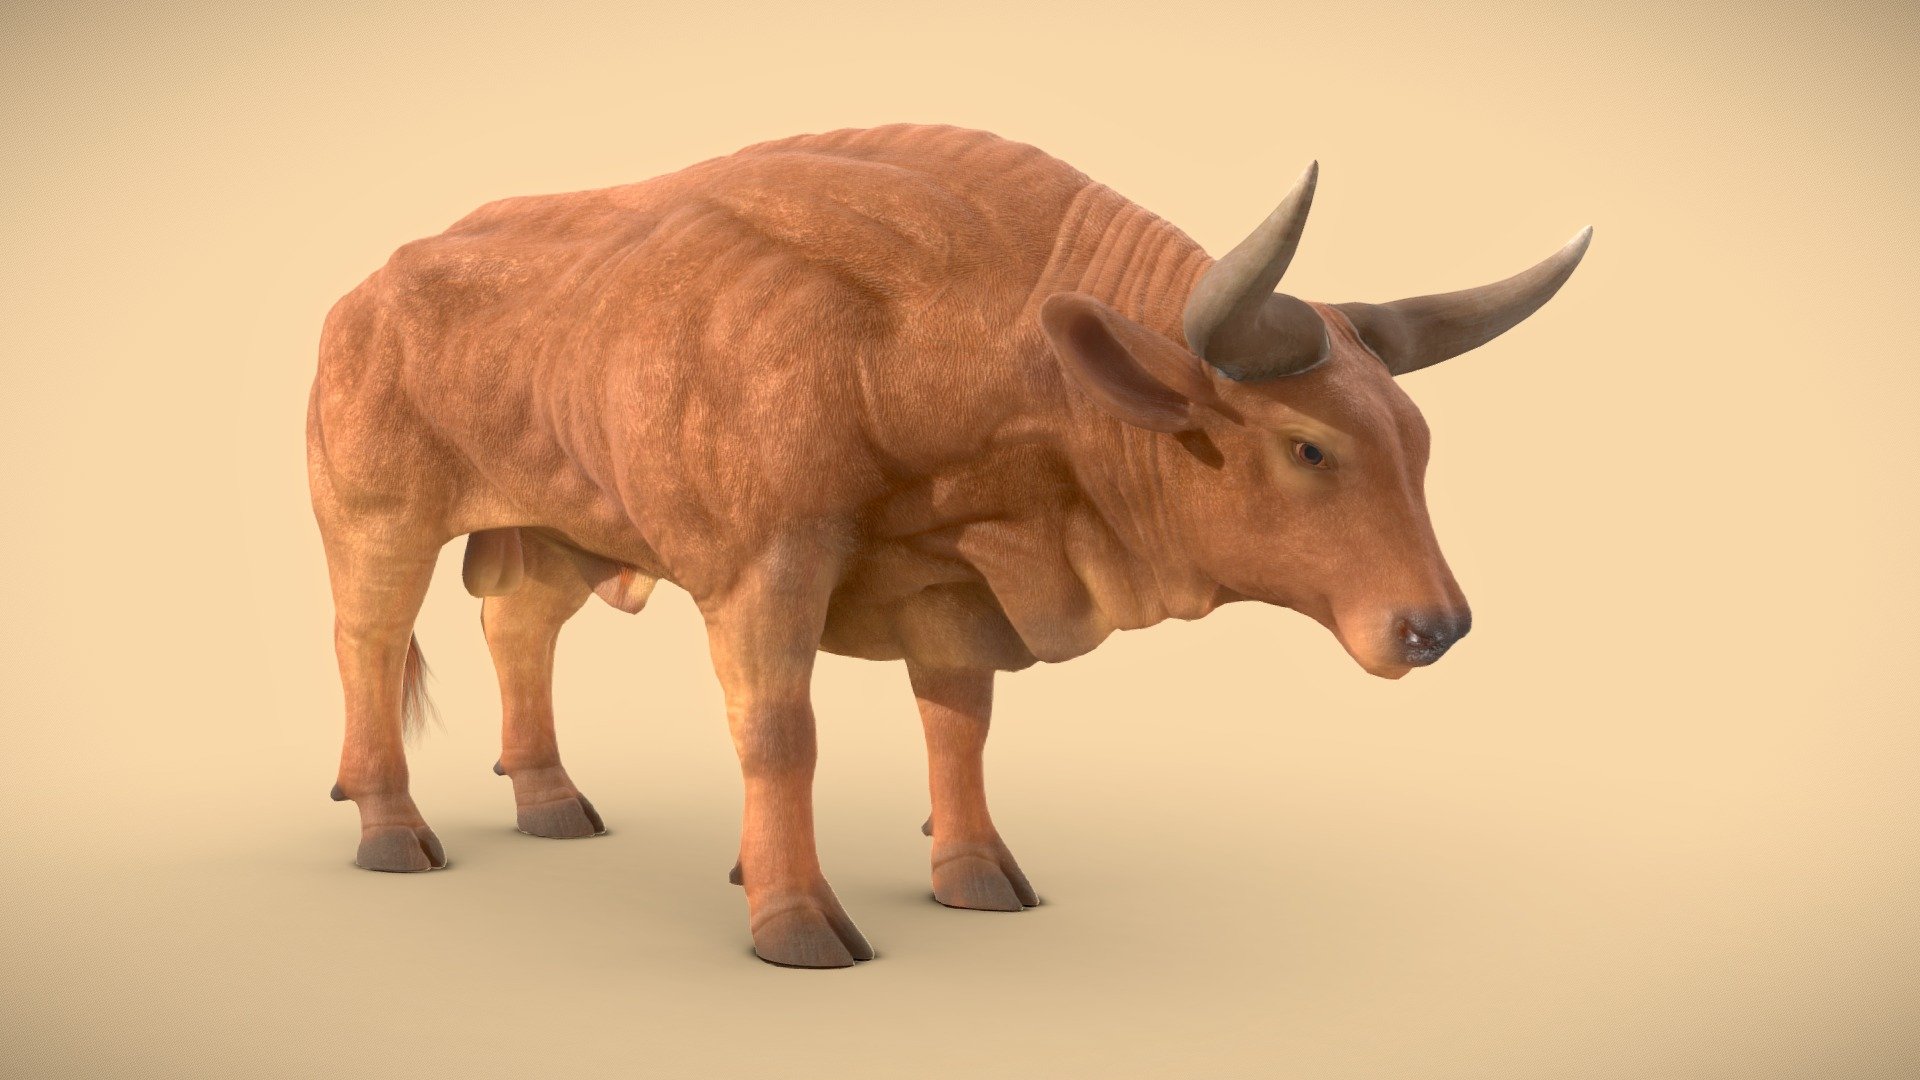 bull-animal-3d-model-by-harshit-prajapati-harshit77-4e5c064